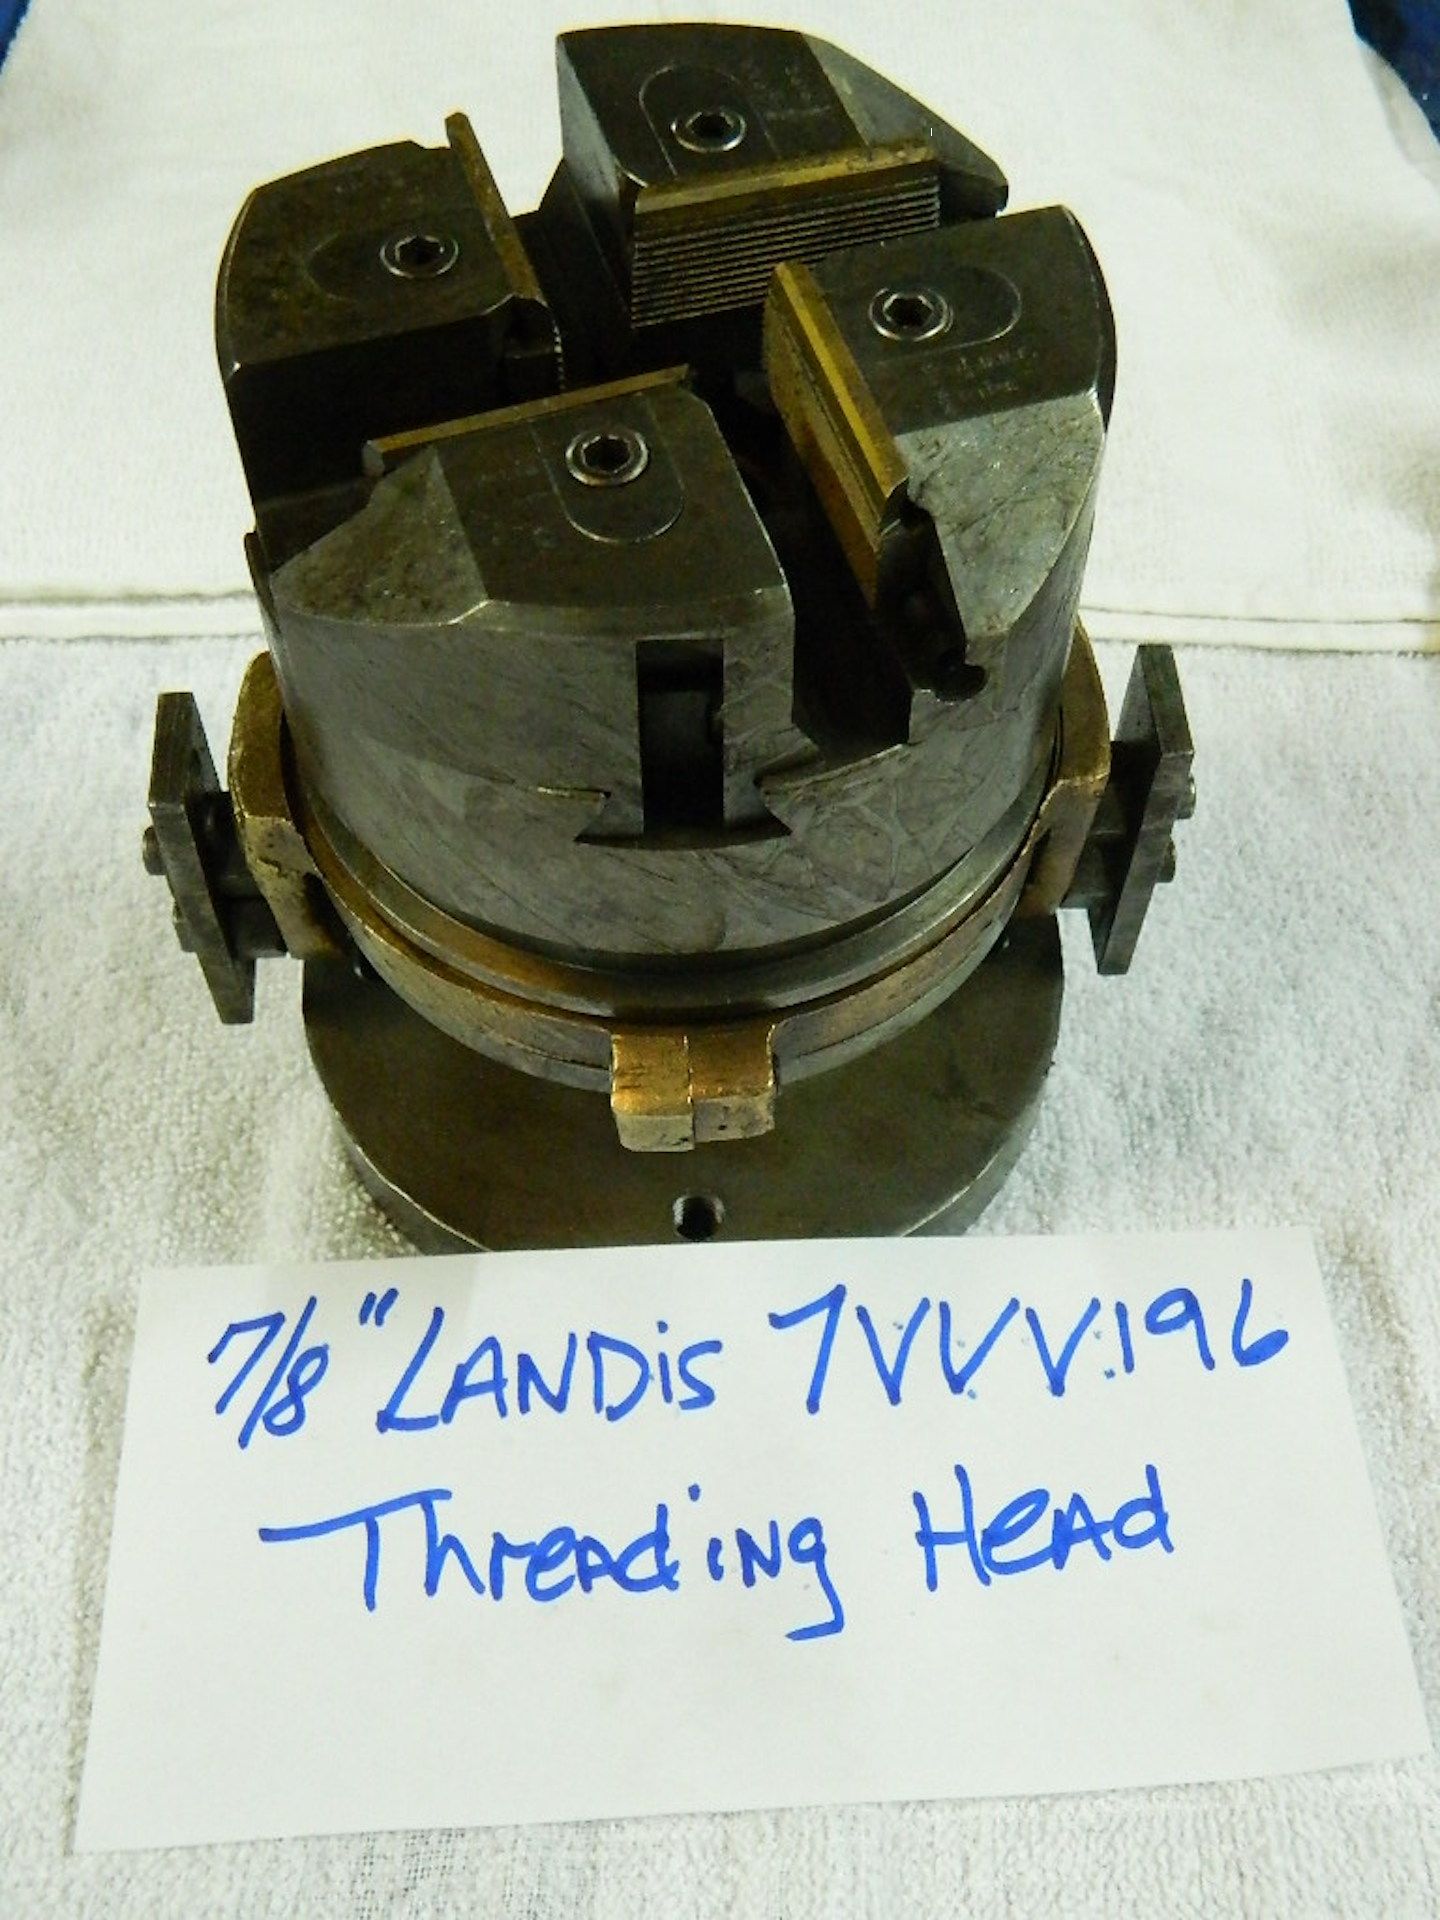 7/8" LANDIS BOLT + PIPE THREADING HEAD, SER# 7VVV196